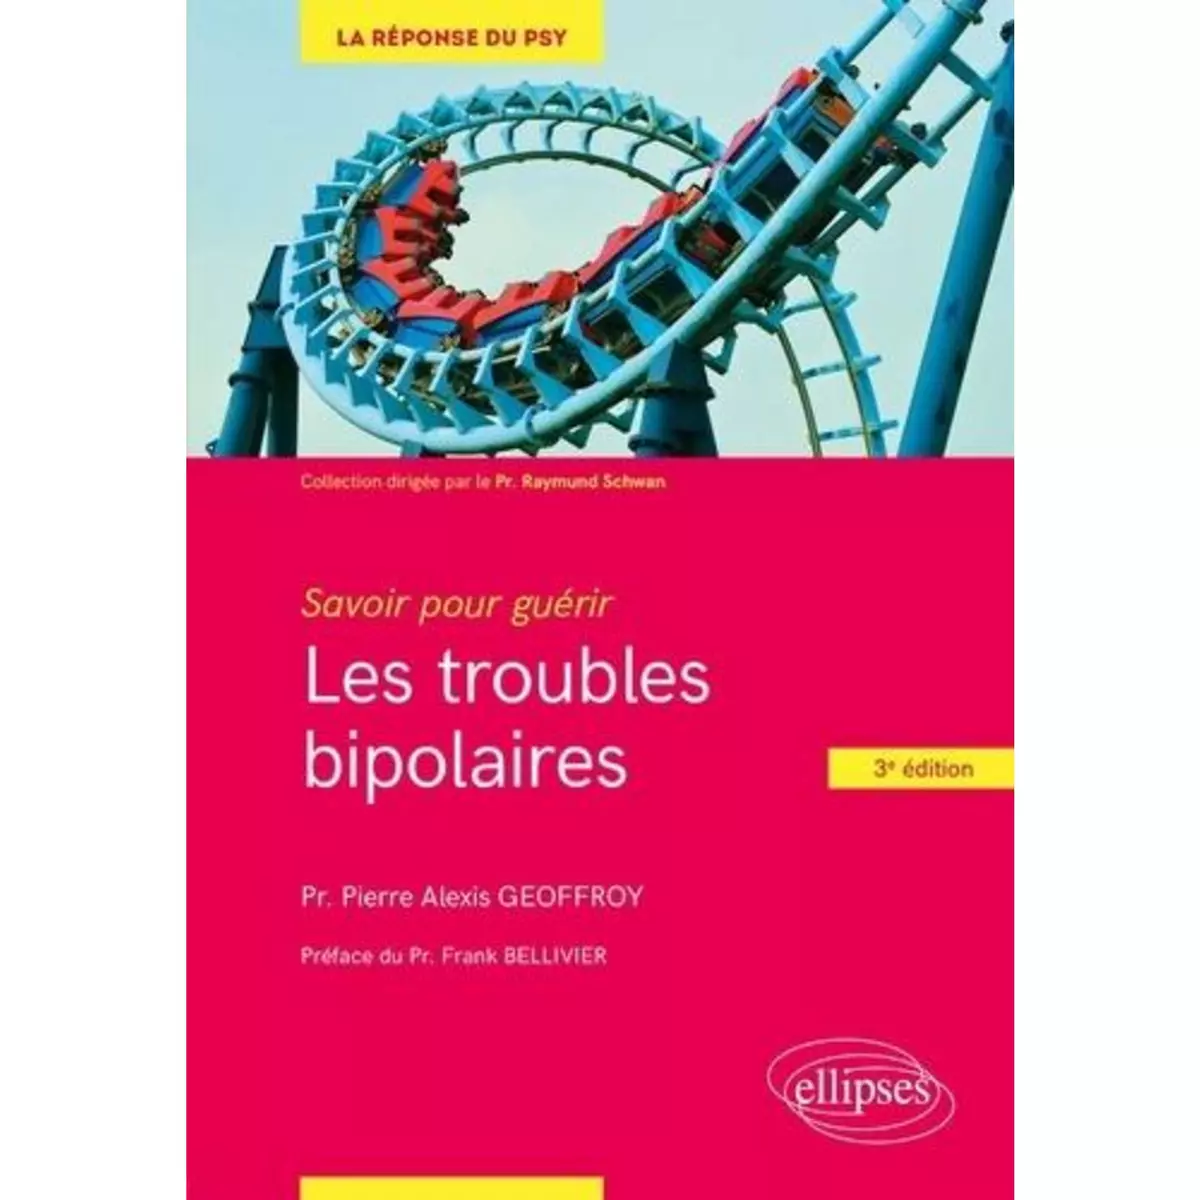  LES TROUBLES BIPOLAIRES. 3E EDITION, Geoffroy Pierre Alexis